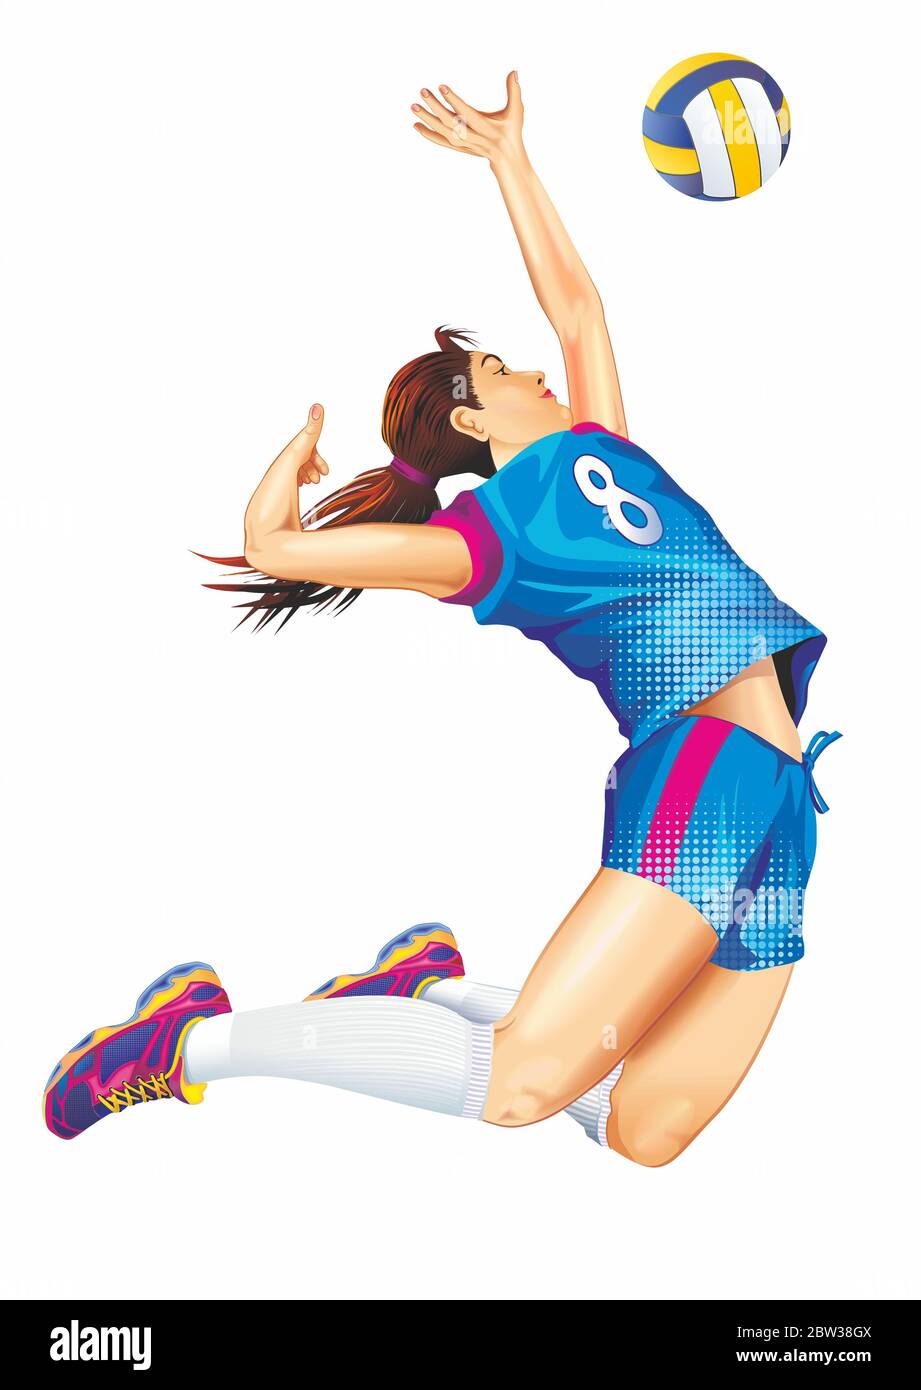 Femelle joueur professionnel de volley-ball Jump isolé sur blanc Illustration détaillée. Thème sports d'équipe. Banque D'Images